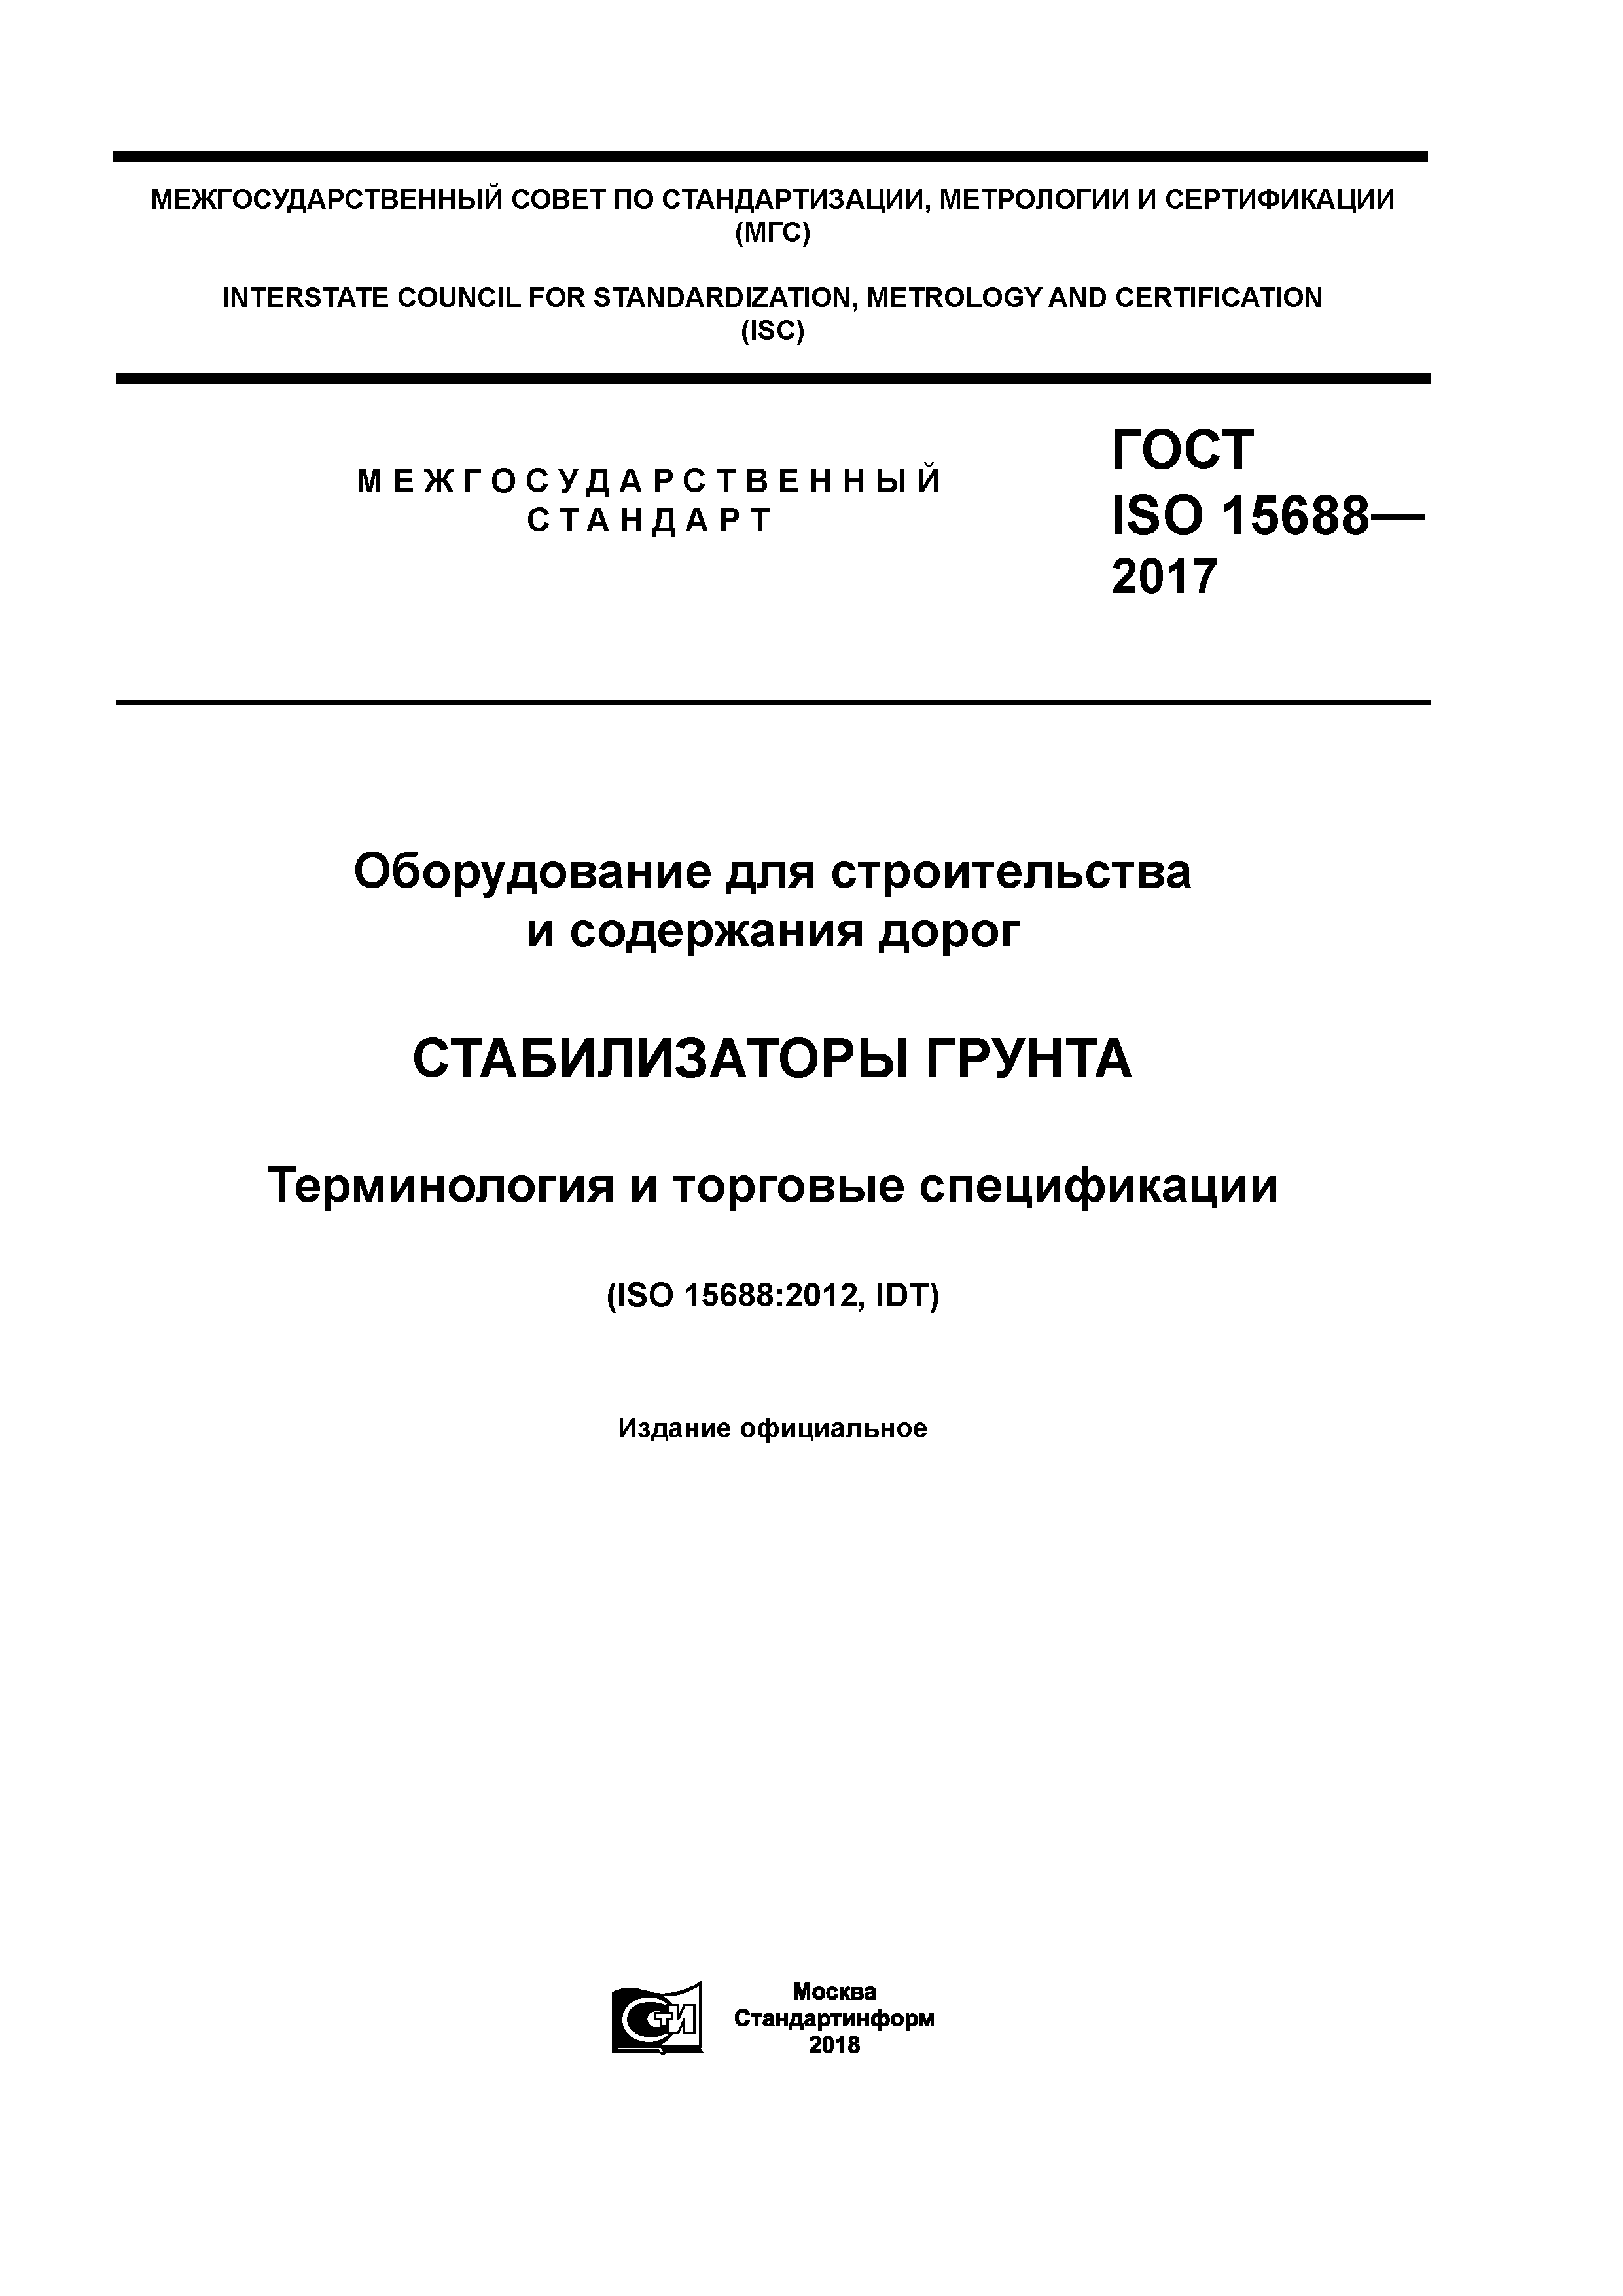 ГОСТ ISO 15688-2017